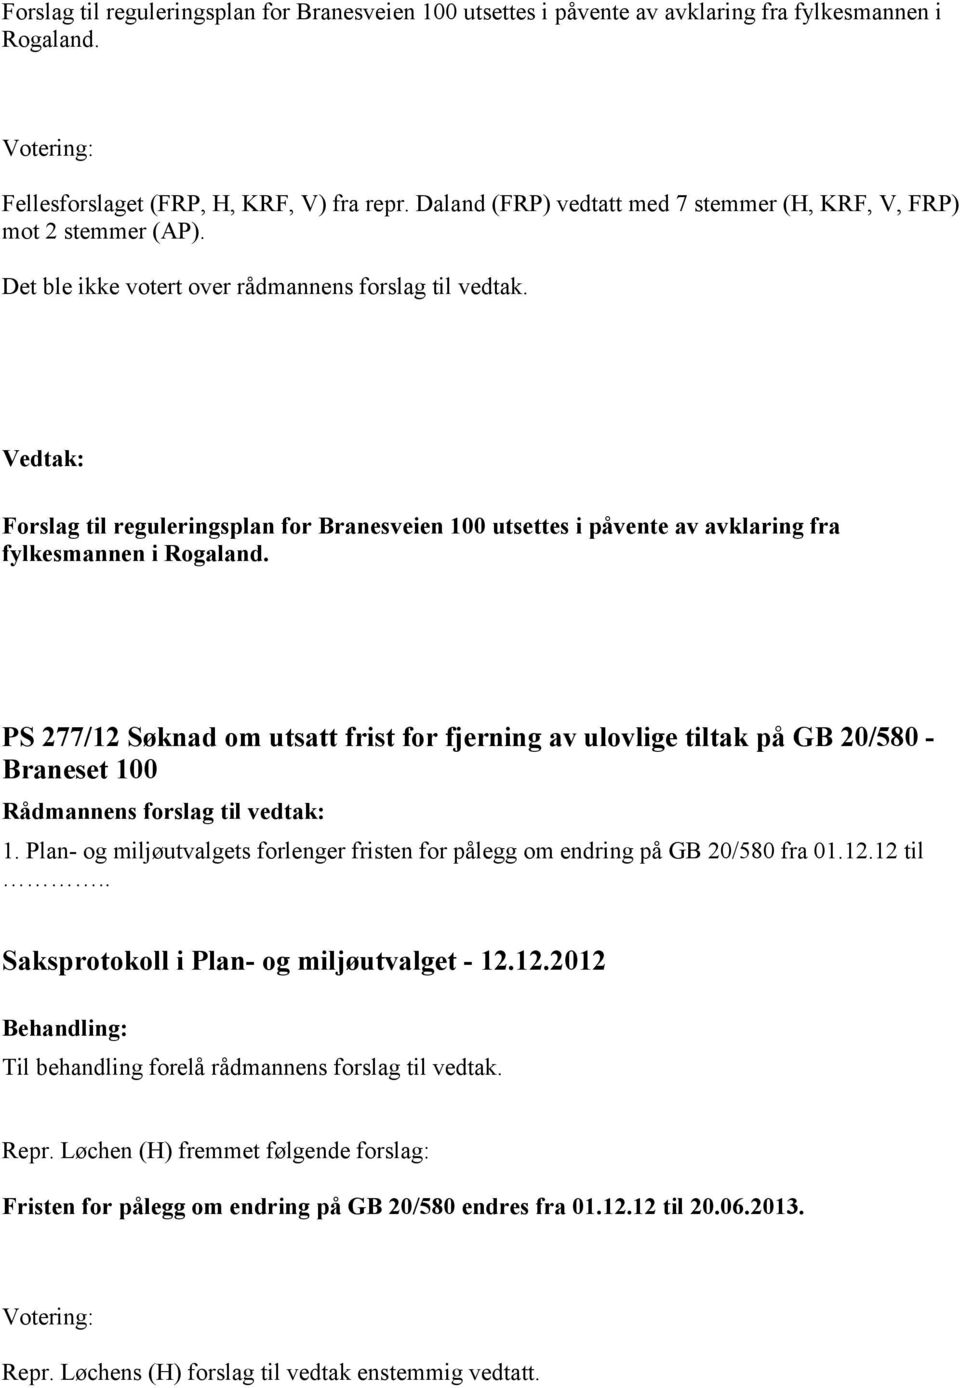 Forslag til reguleringsplan for Branesveien 100 utsettes i påvente av avklaring fra fylkesmannen i Rogaland.